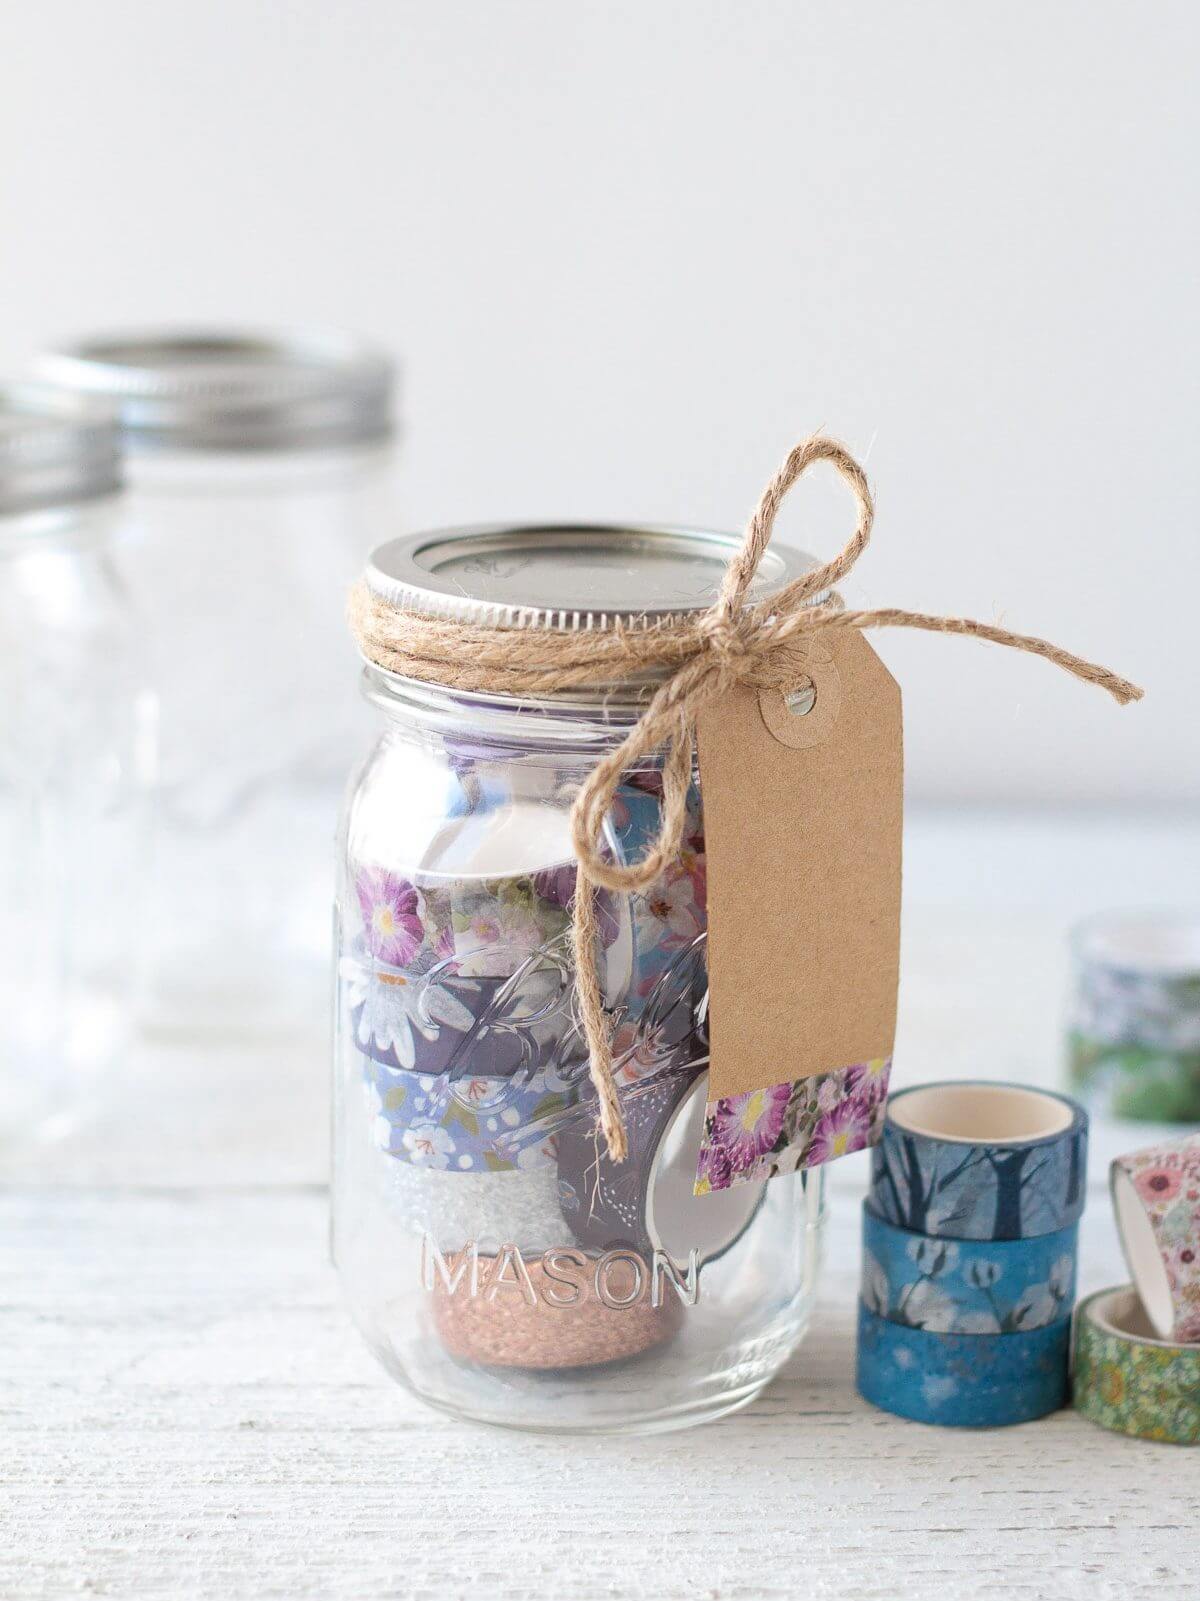 Simple & Pretty Mason Jar Craft Ideas Using Washi Tape